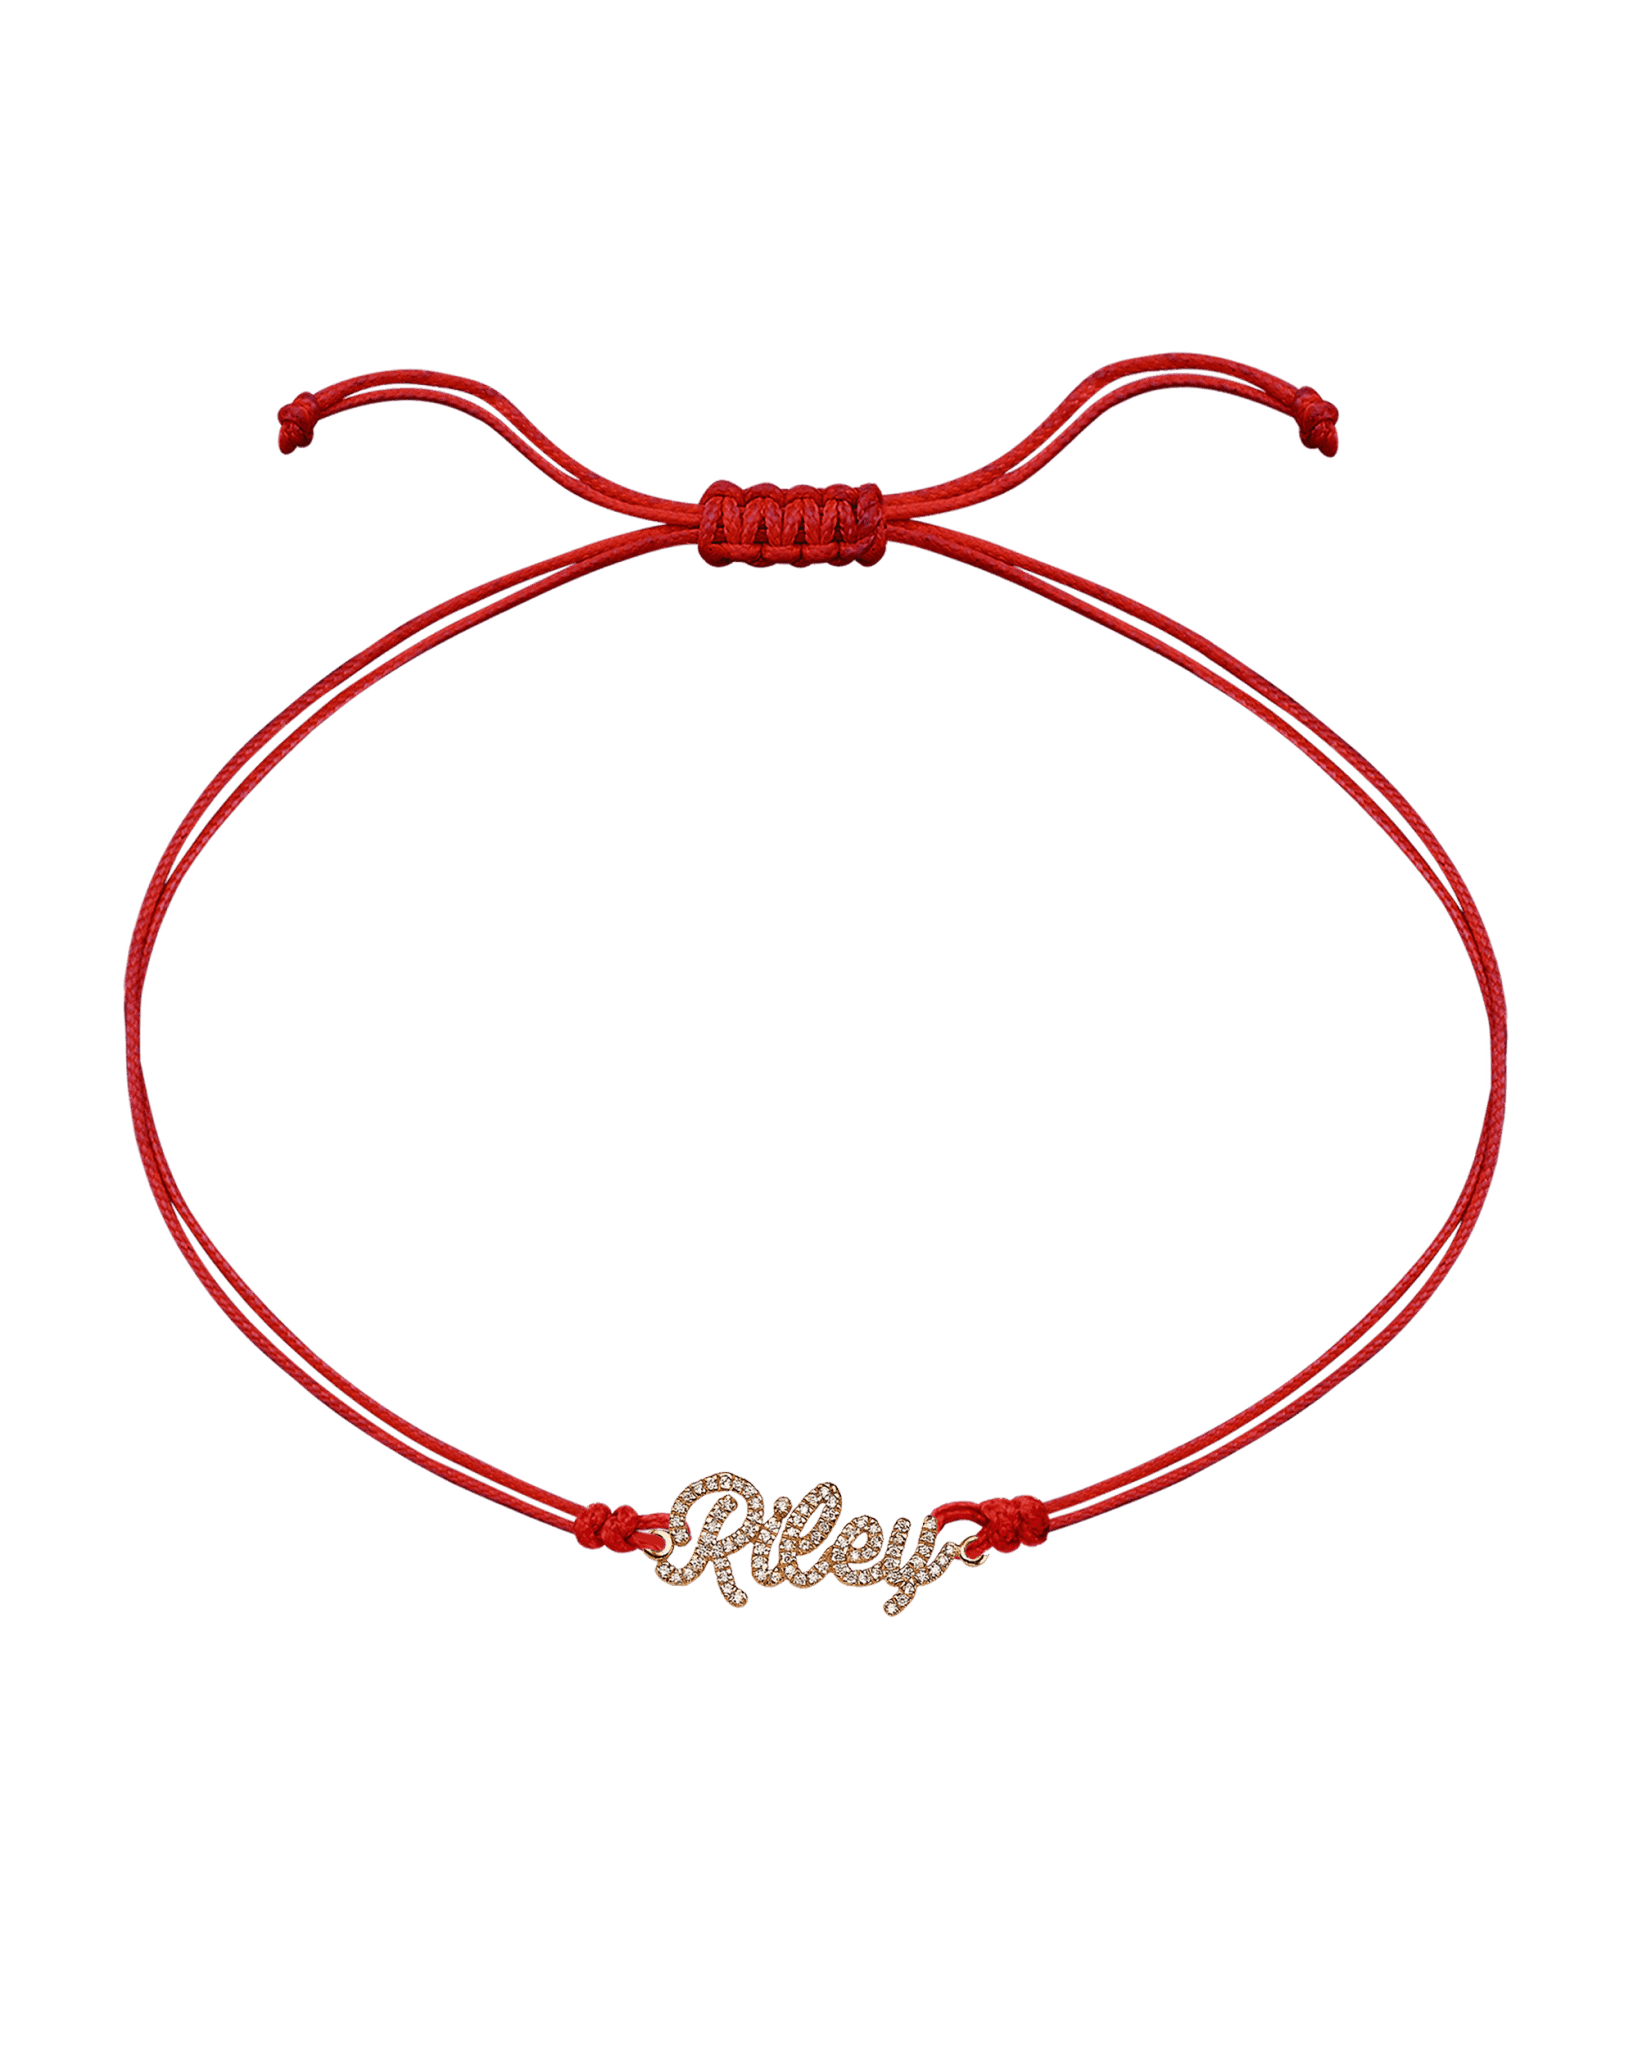 Paved Name Plate String of Love - 14K Rose Gold Bracelet 14K Solid Gold Red 1 